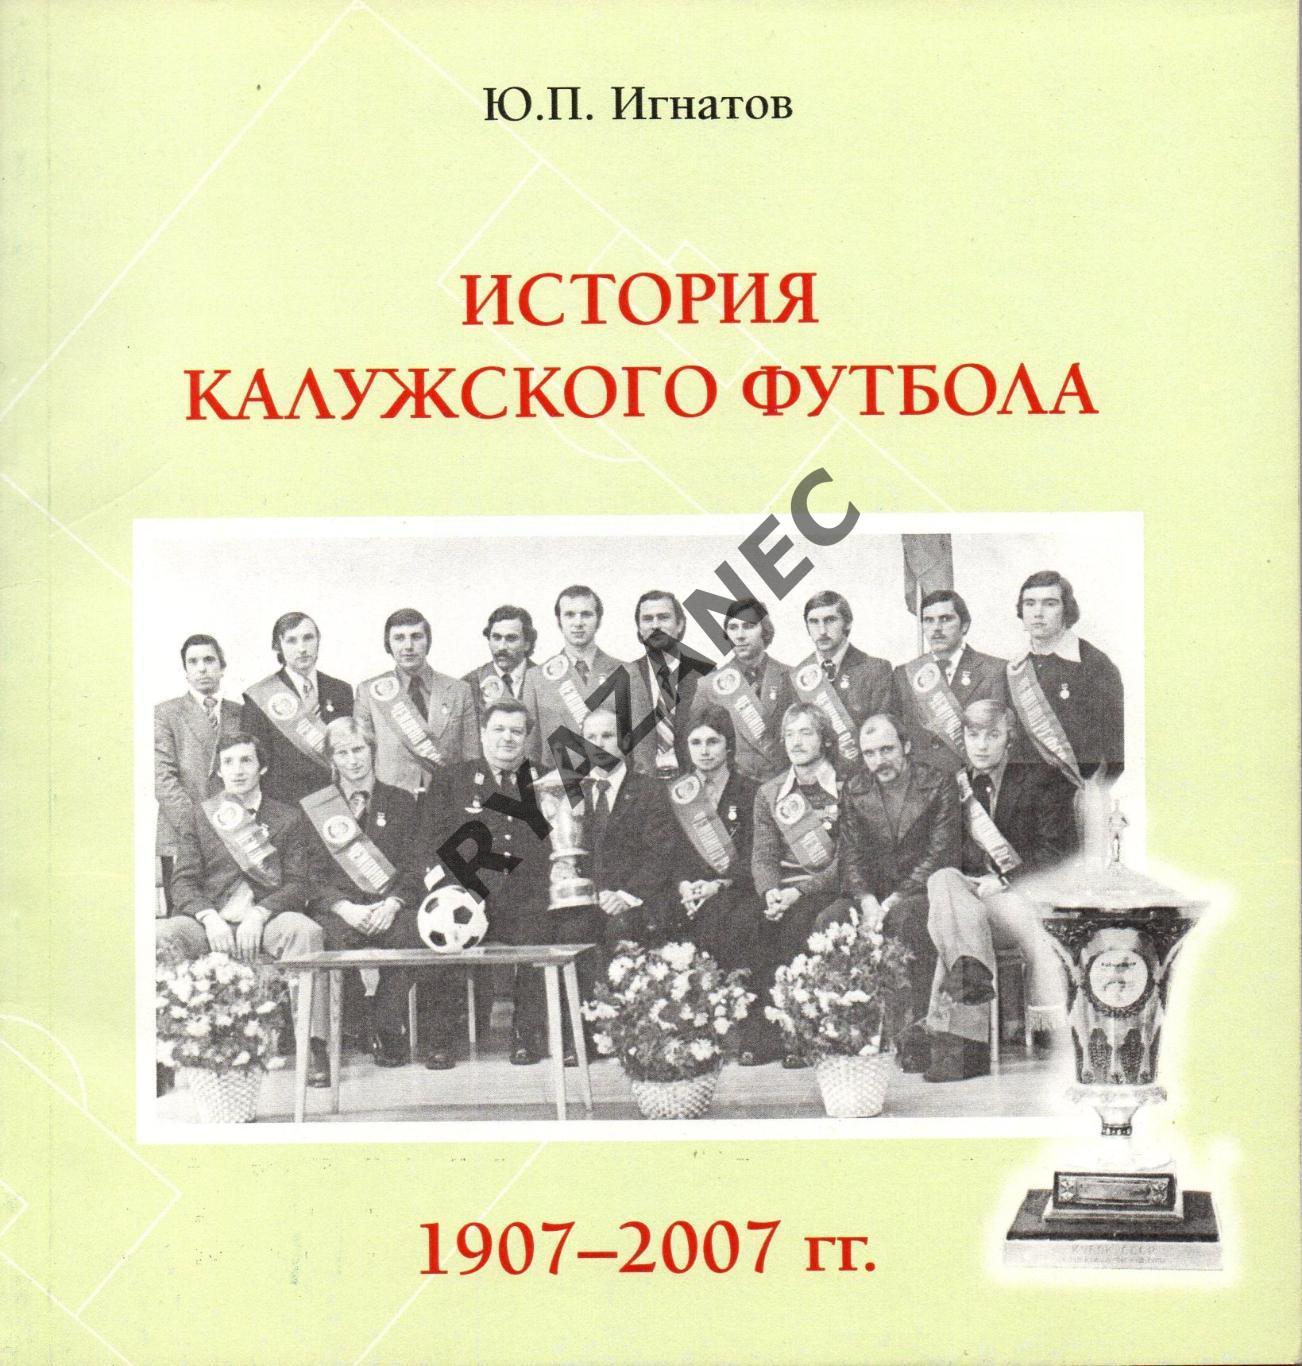 Игнатов Ю.П. История калужского футбола 1907-2007. 168 стр.